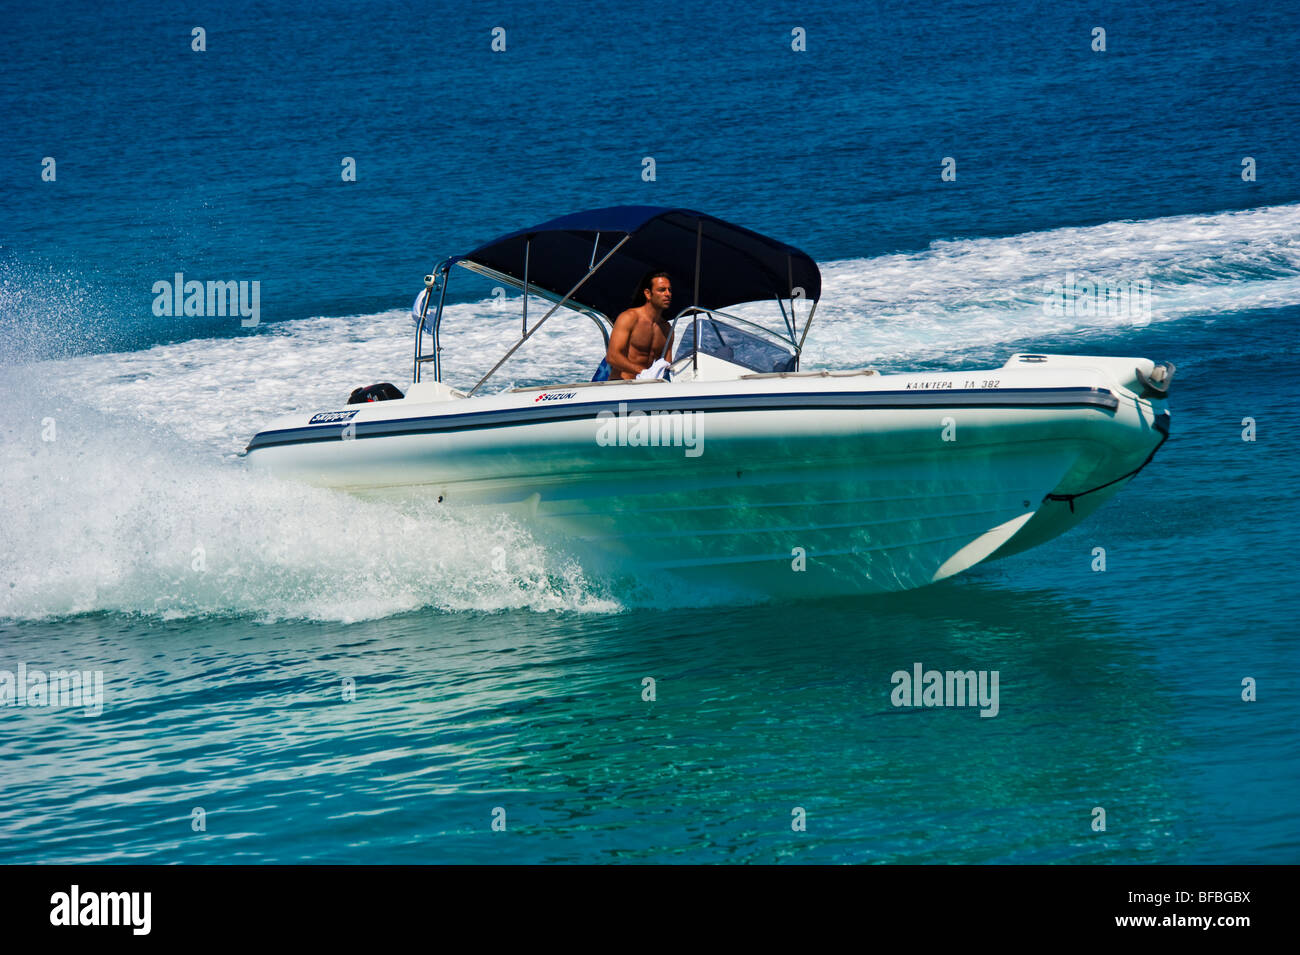 Bateau gonflable blanc courbant avec grande vitesse dans l'eau bleue, Saroic Golf, Grèce Banque D'Images